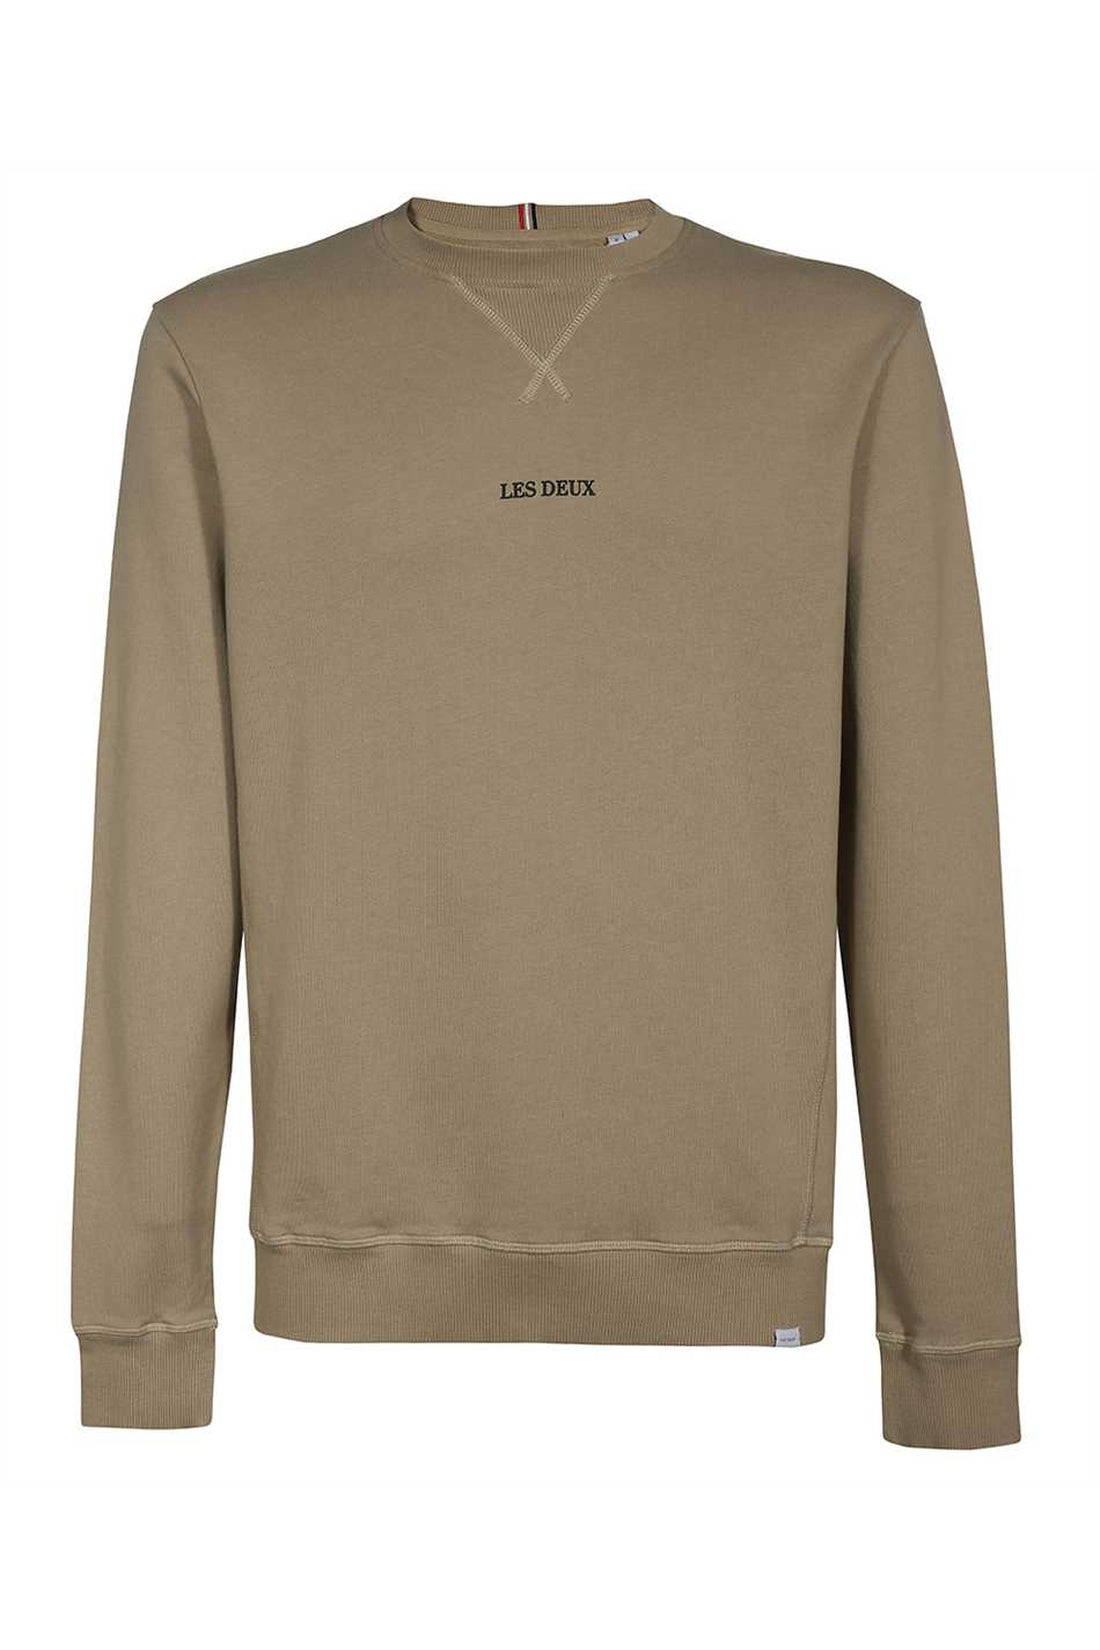 Les Deux-OUTLET-SALE-Lens logo detail cotton sweatshirt-ARCHIVIST